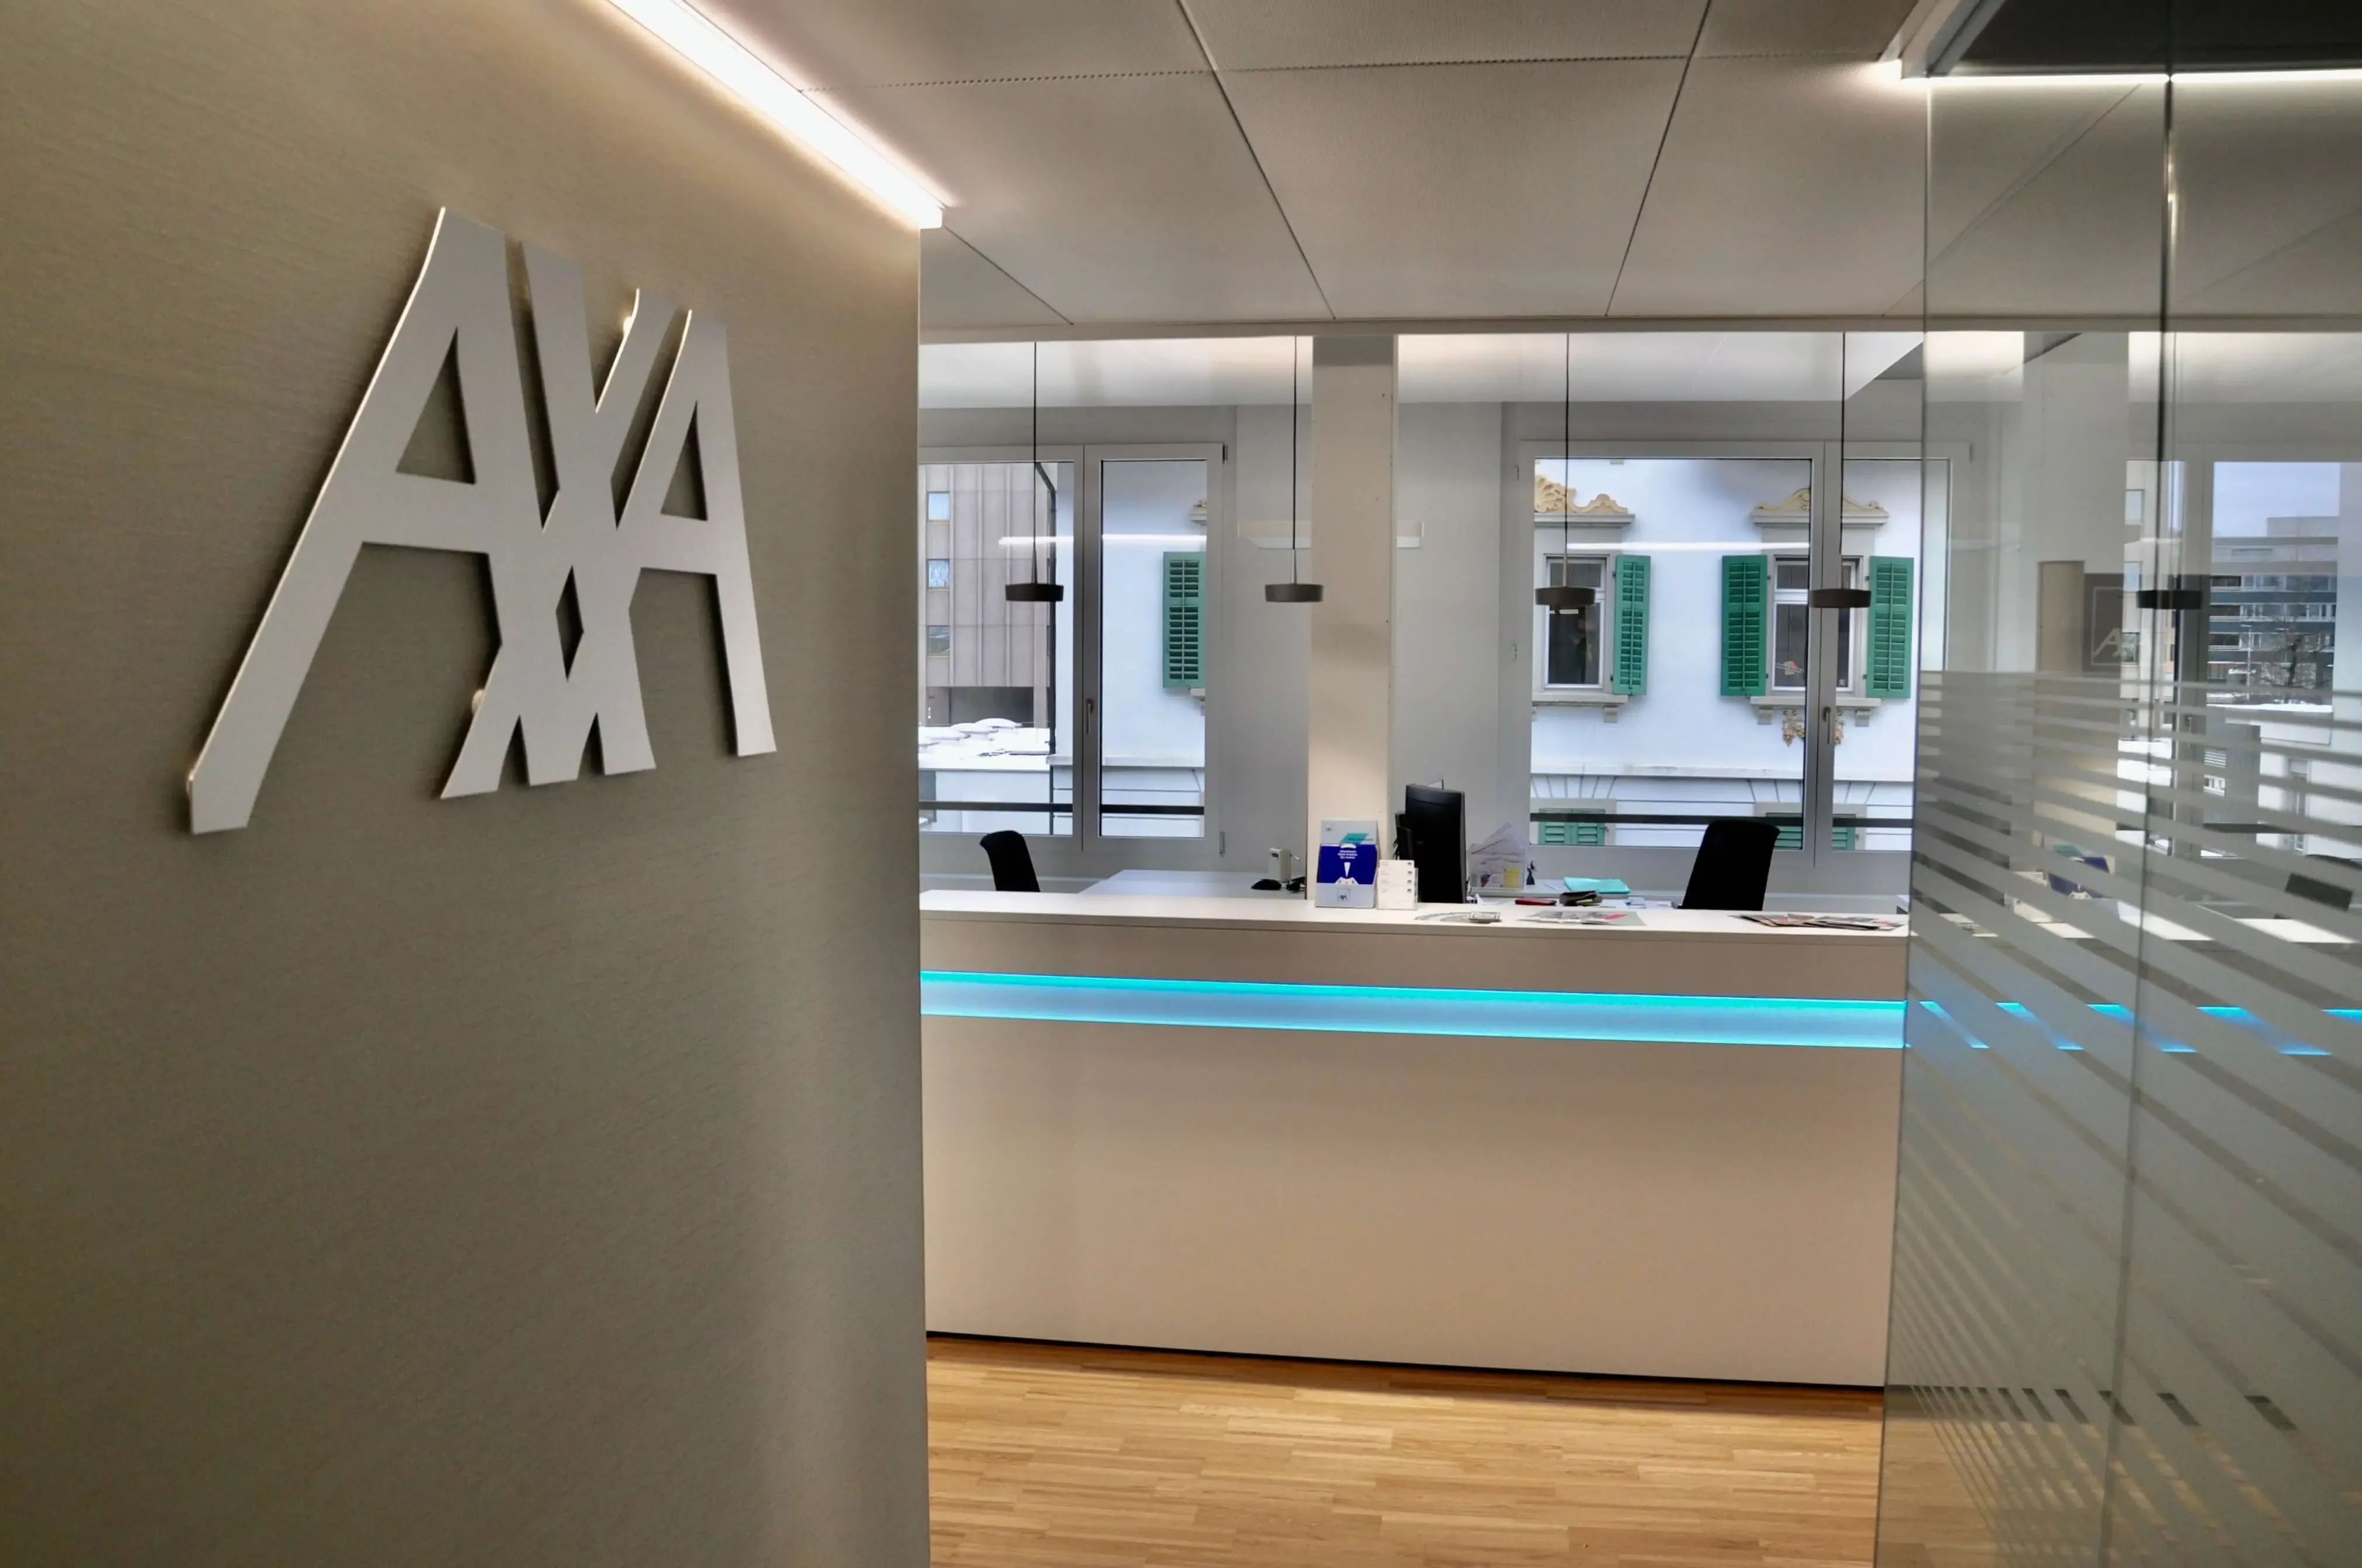 AXA Central office